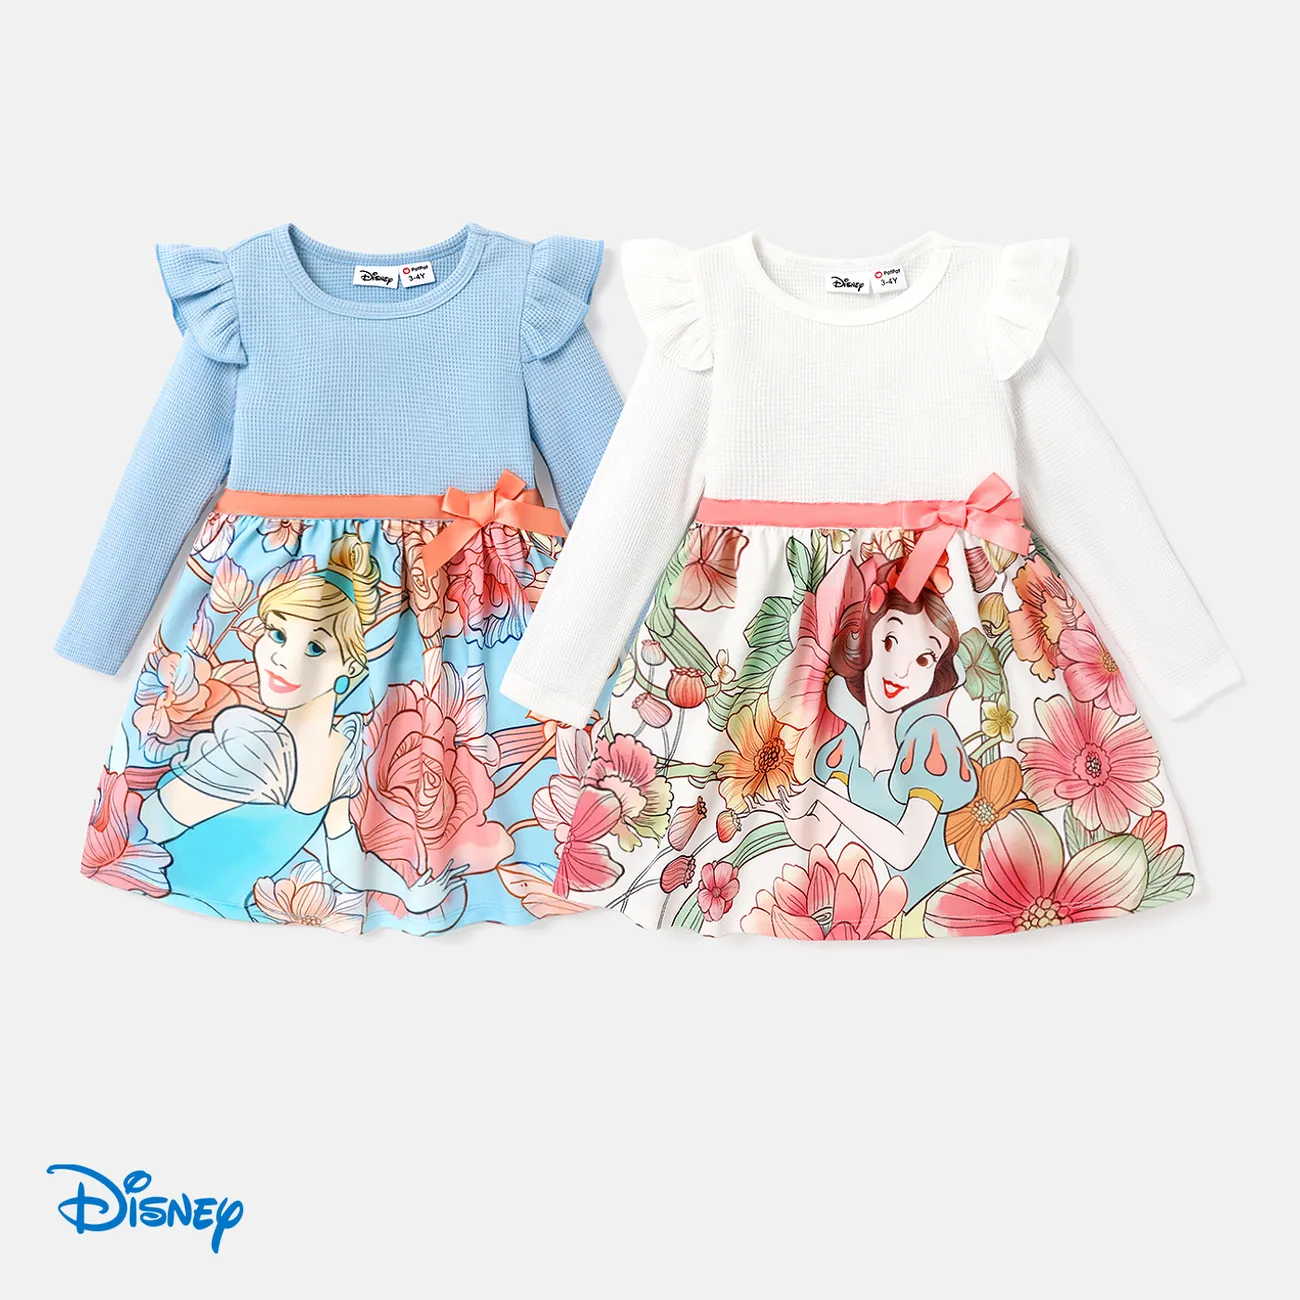 Disney Princess Toddler Girl Floral Waist Webbing Dress Blue big image 1